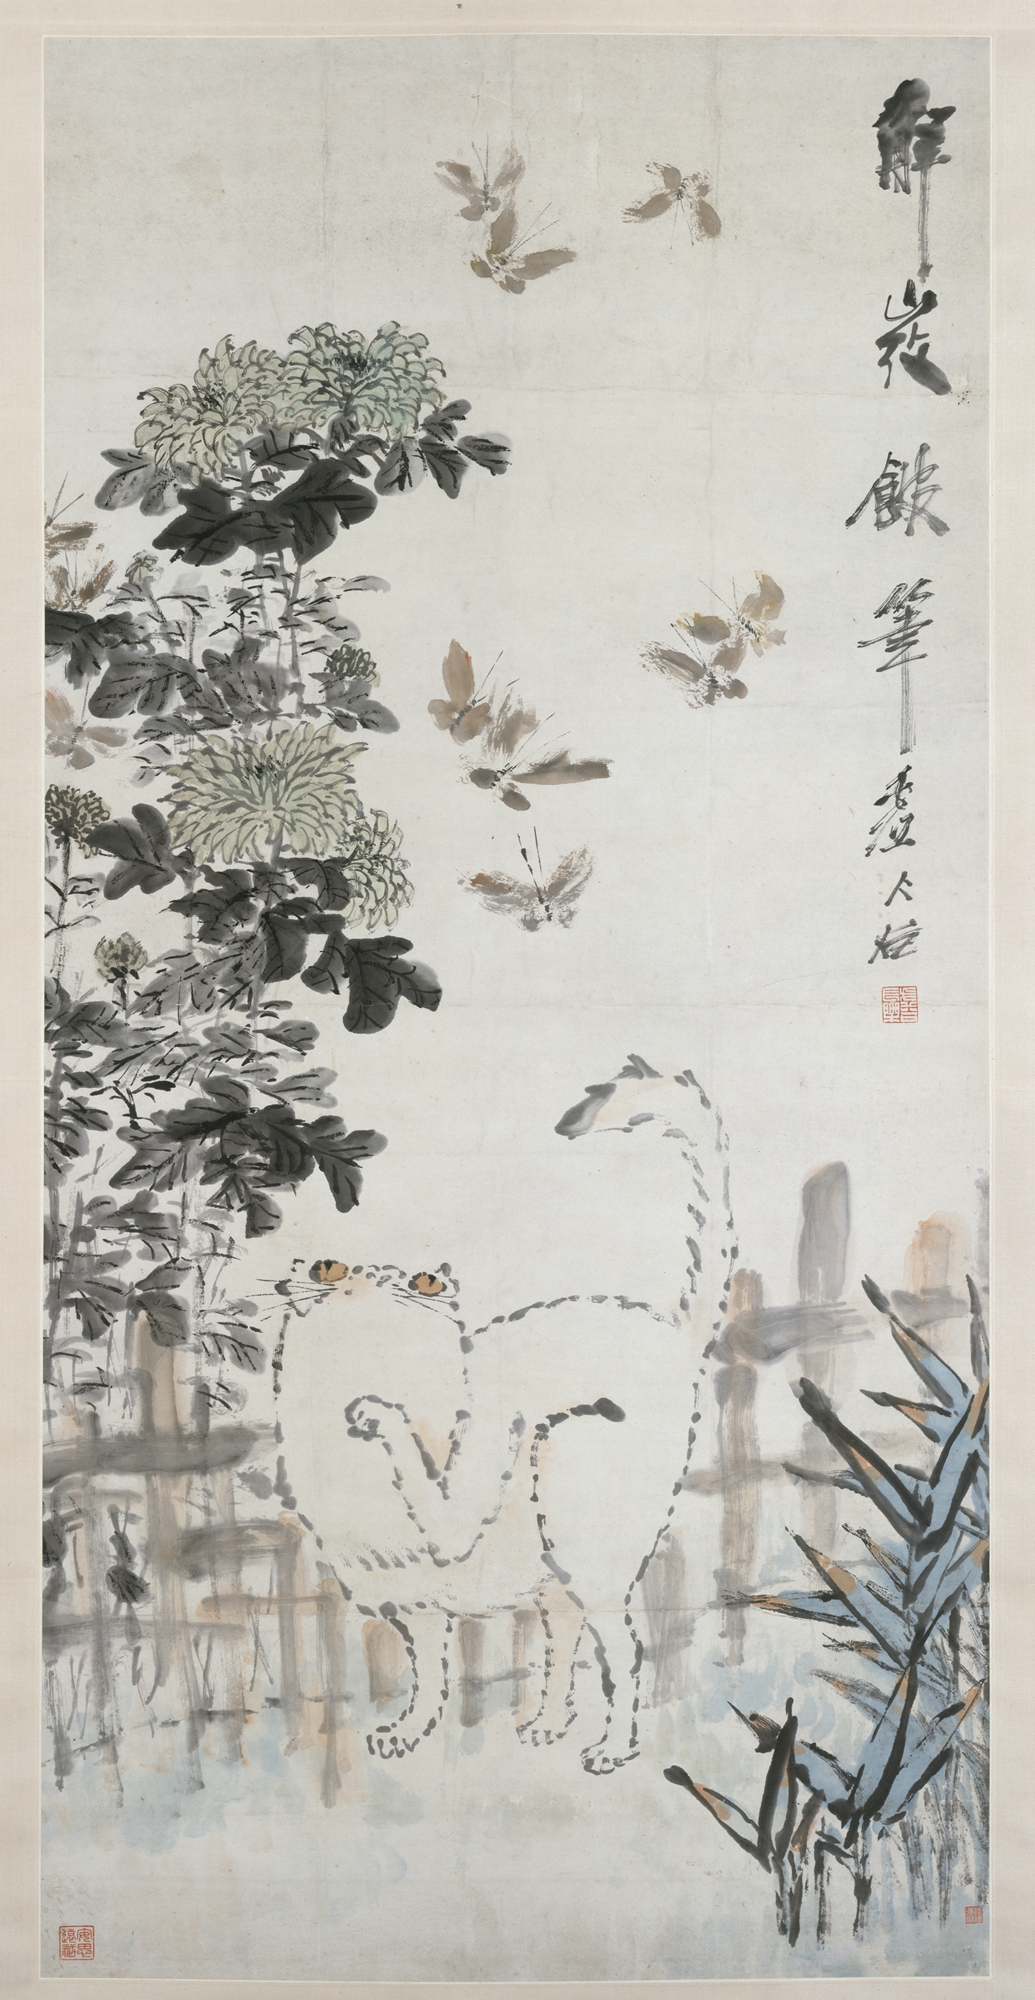 猫与蝴蝶 by  虚 - 19世纪 - 133.4 x 65.4 cm 